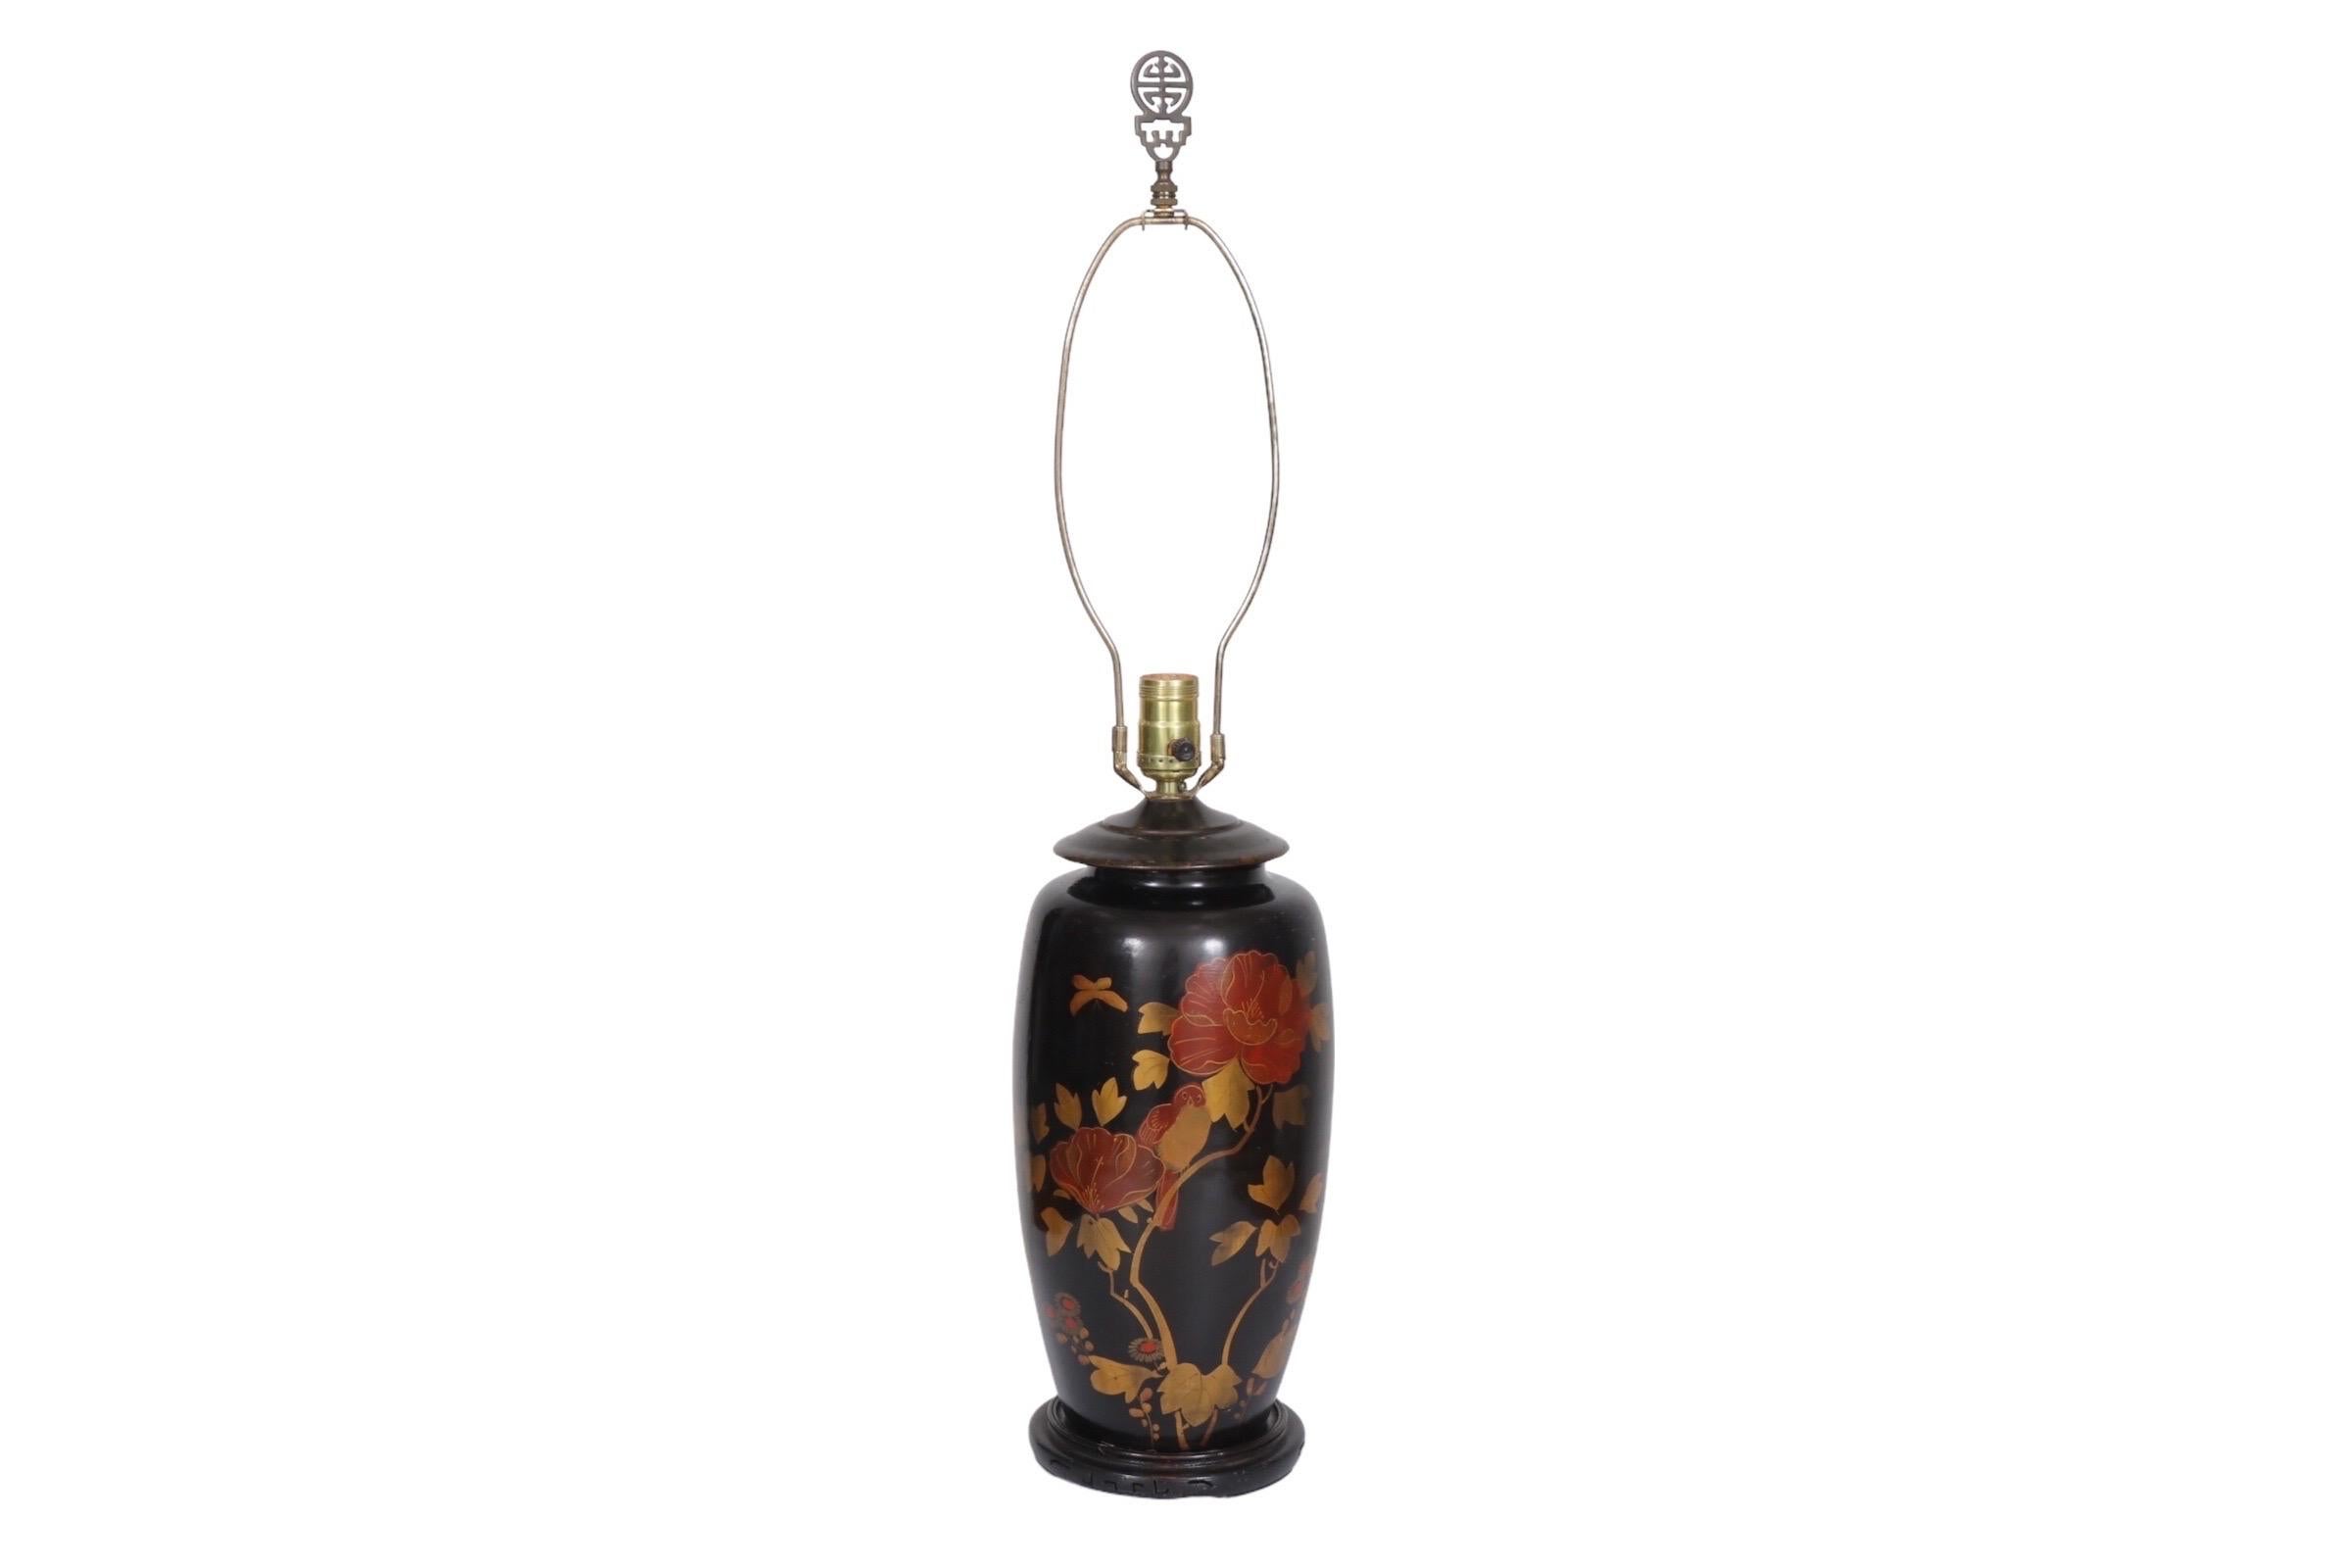 Une lampe de table de Chinoiserie en tôle noire japonaise. Le vase en forme d'urne est doté d'un capuchon en métal et est délicieusement décoré sur le devant de fleurs de camélia rouges peintes à la main, de feuillages dorés et d'oiseaux. Il repose